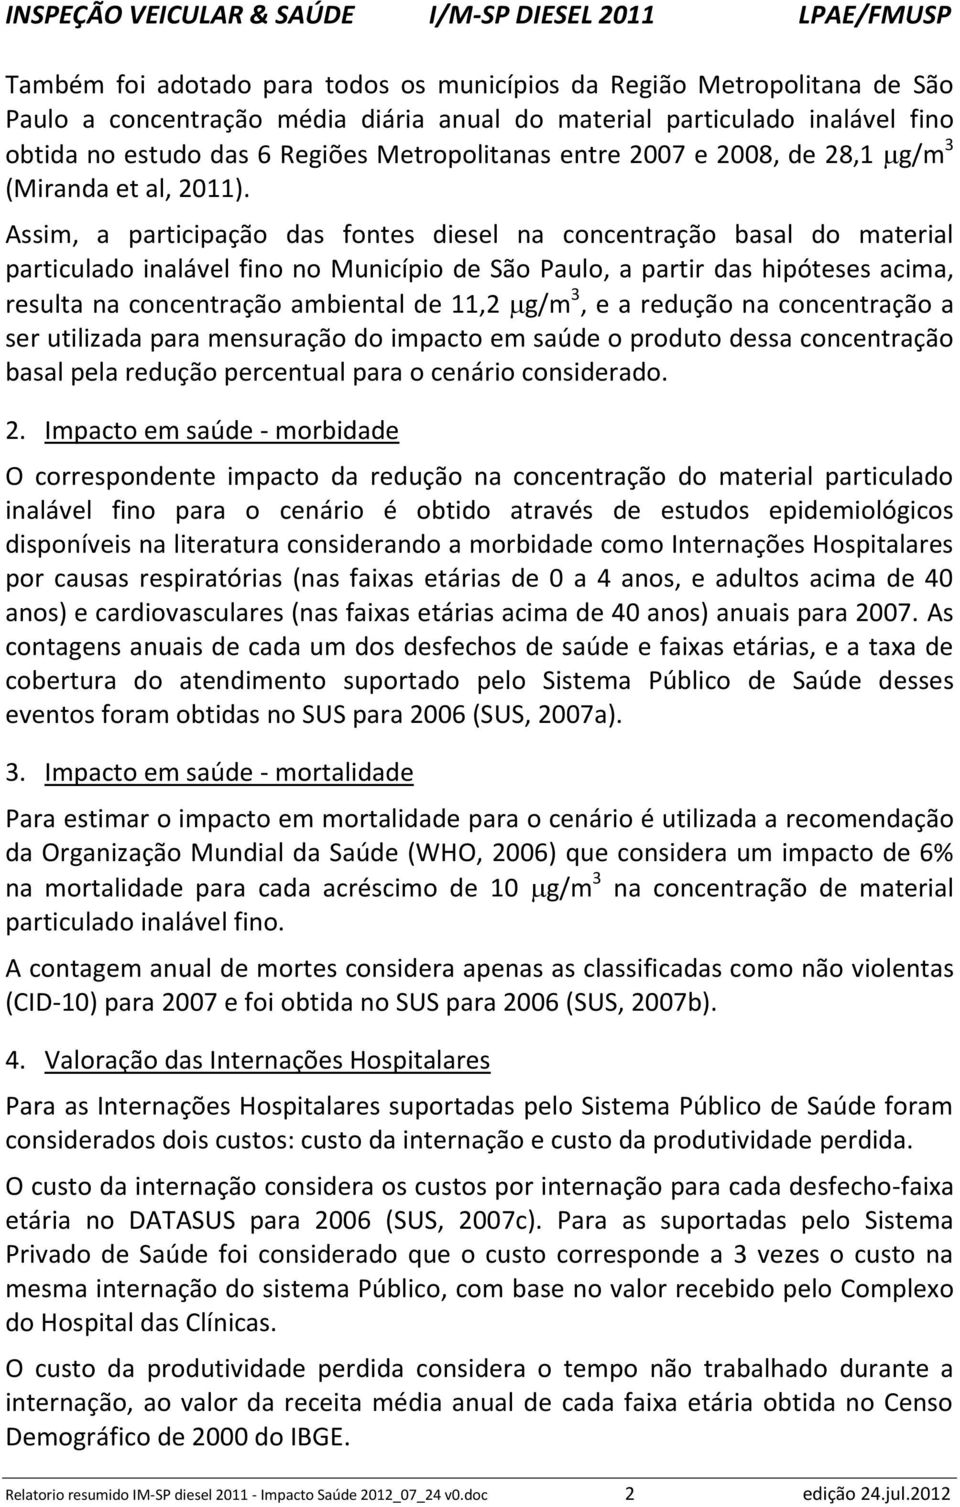 Assim, a participação das fontes diesel na concentração basal do material particulado inalável fino no Município de São Paulo, a partir das hipóteses acima, resulta na concentração ambiental de 11,2